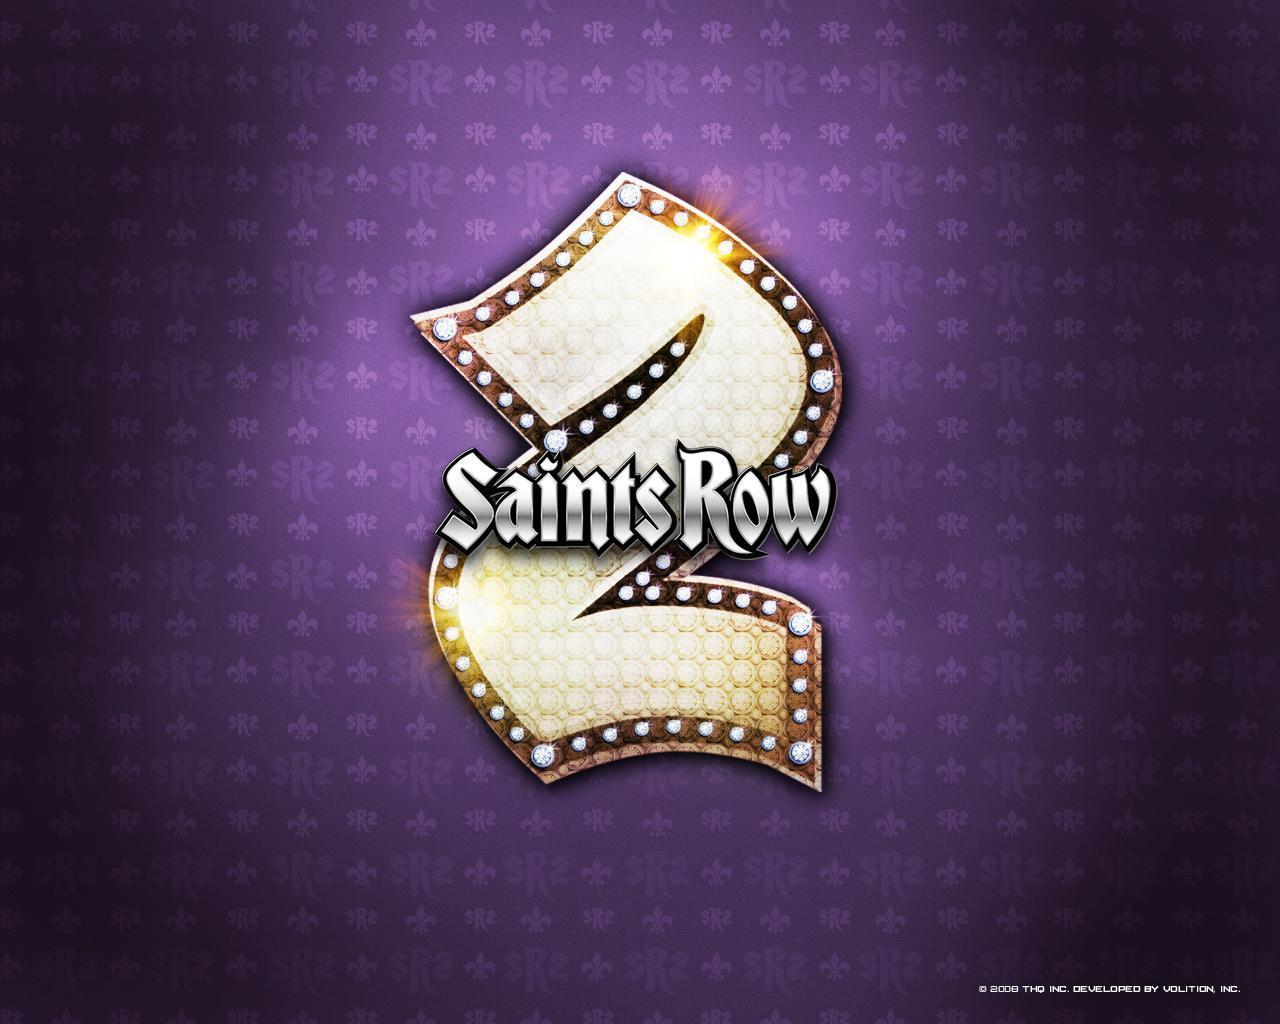 Saints Row 2 Wallpaper: Saints Row 2 | Saints row, Saints, Wonder woman